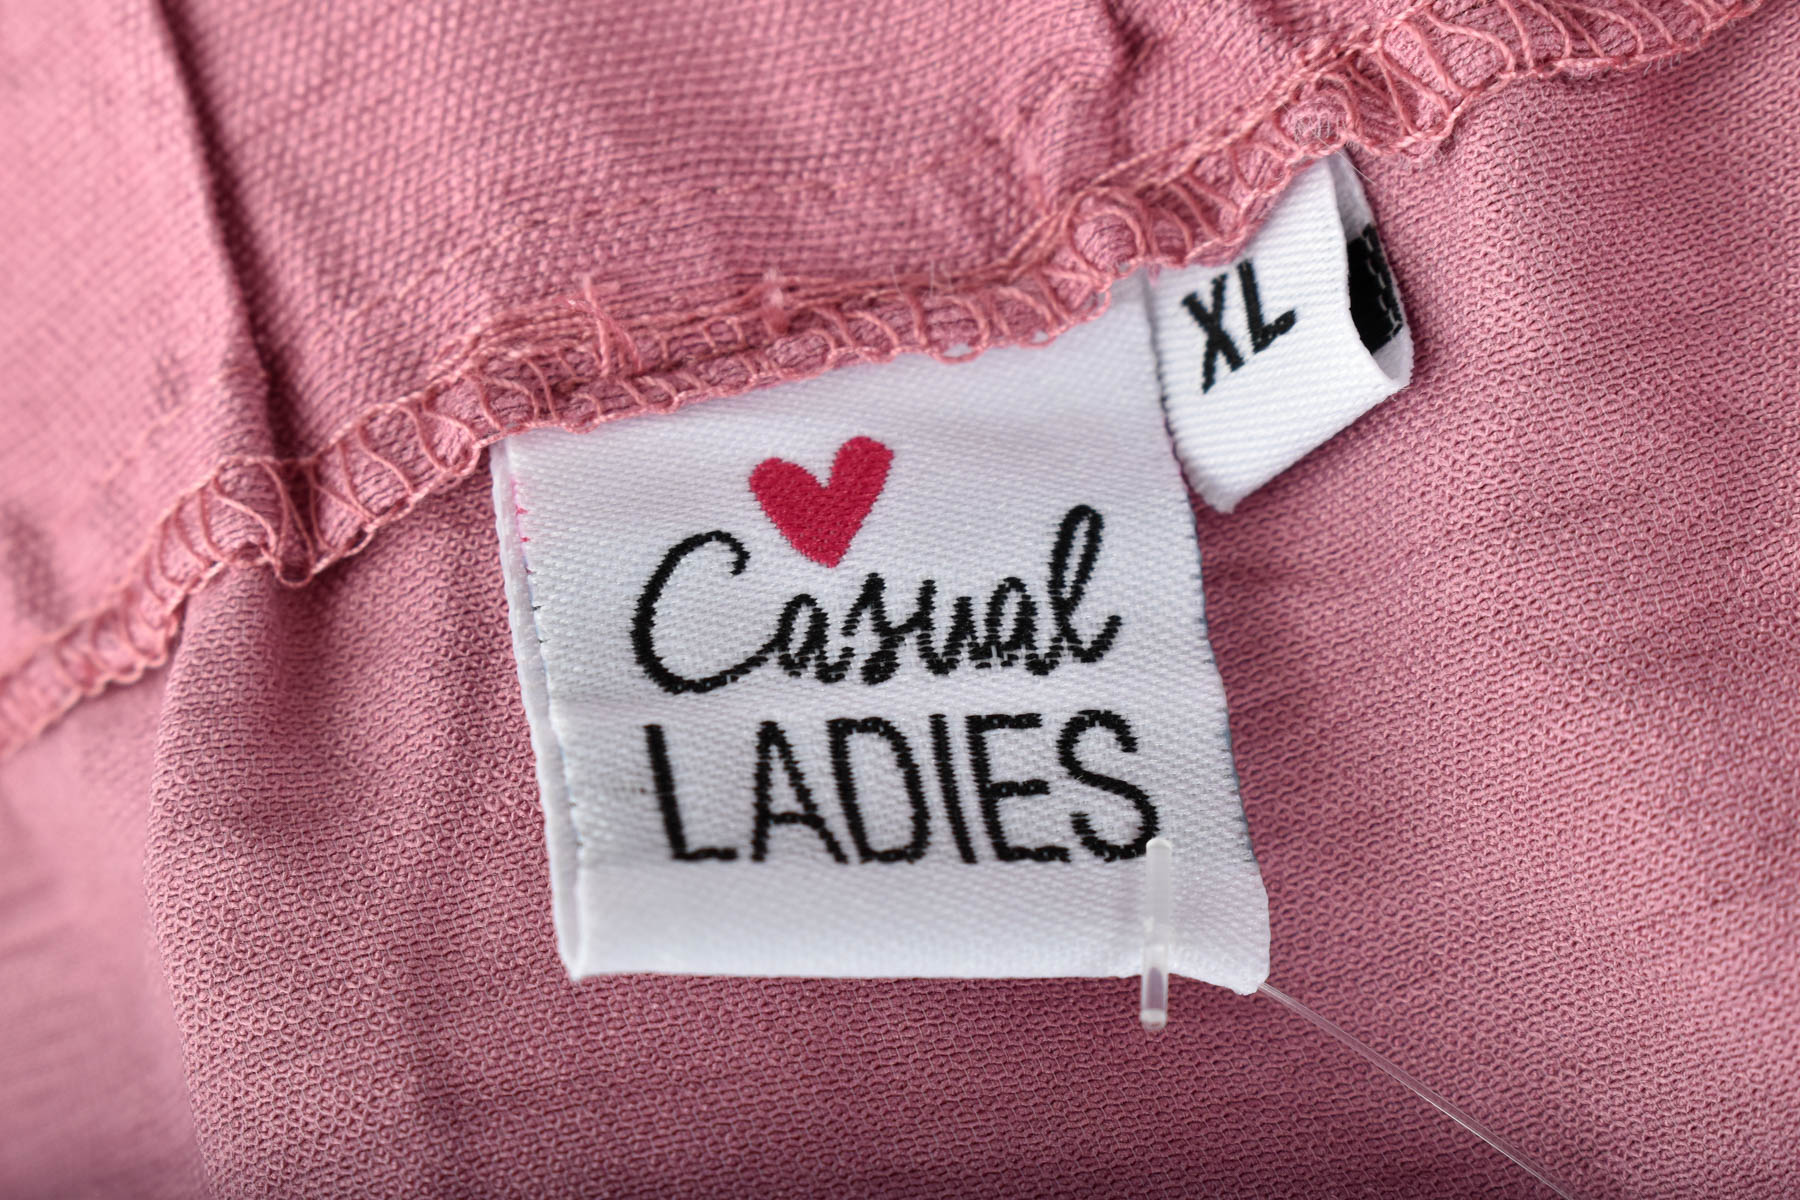 Skirt - Casual LADIES - 2